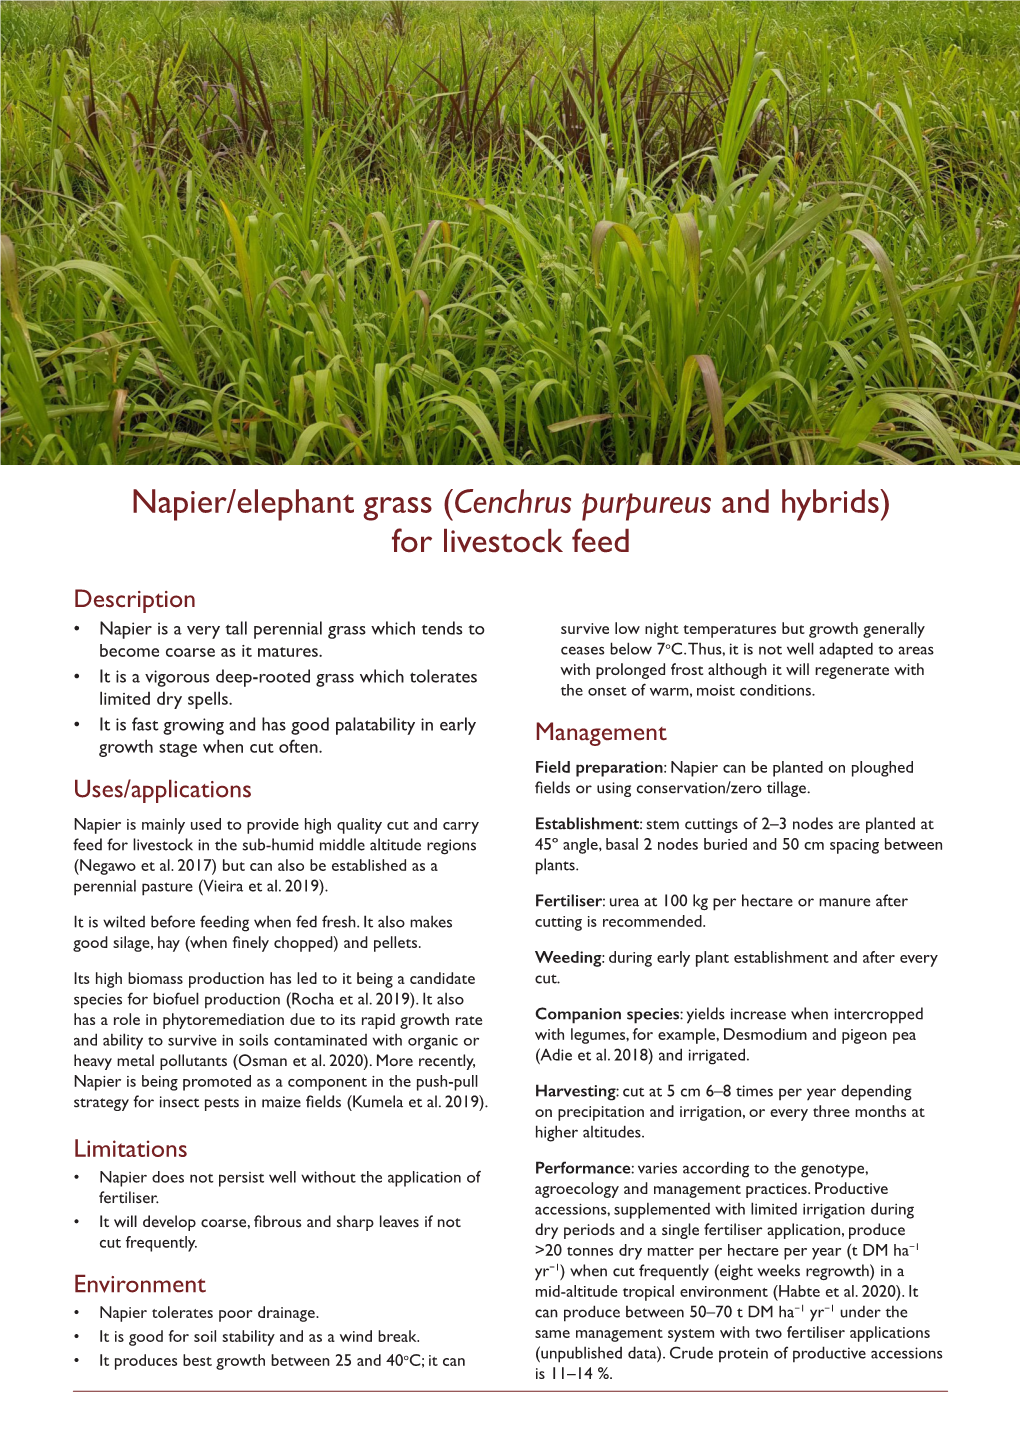 Napier/Elephant Grass (Cenchrus Purpureus and Hybrids) for Livestock Feed